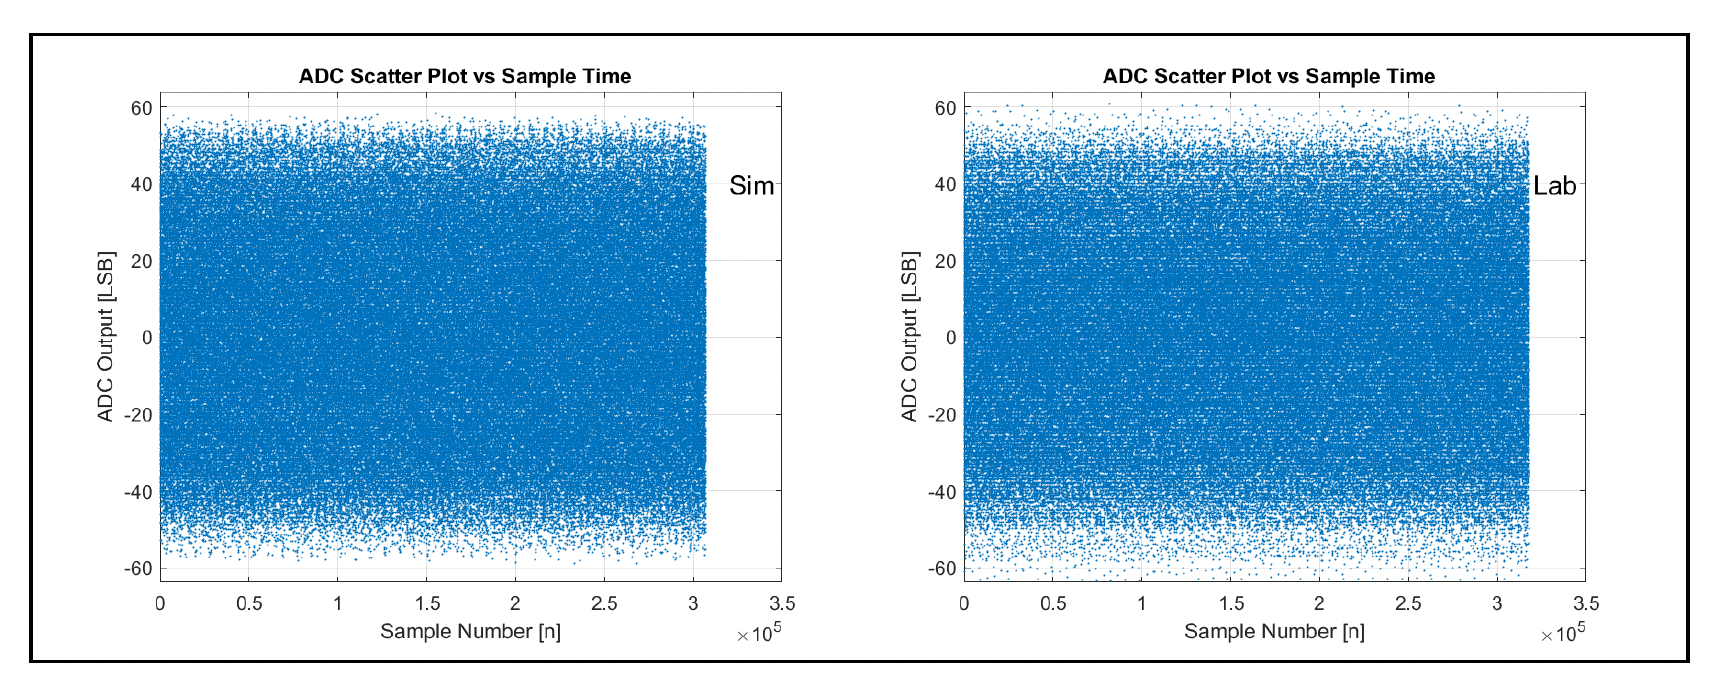 Simülasyon ve Silikon ADC çıkışı dağılım grafiği 1.6 Tbps Dönemi